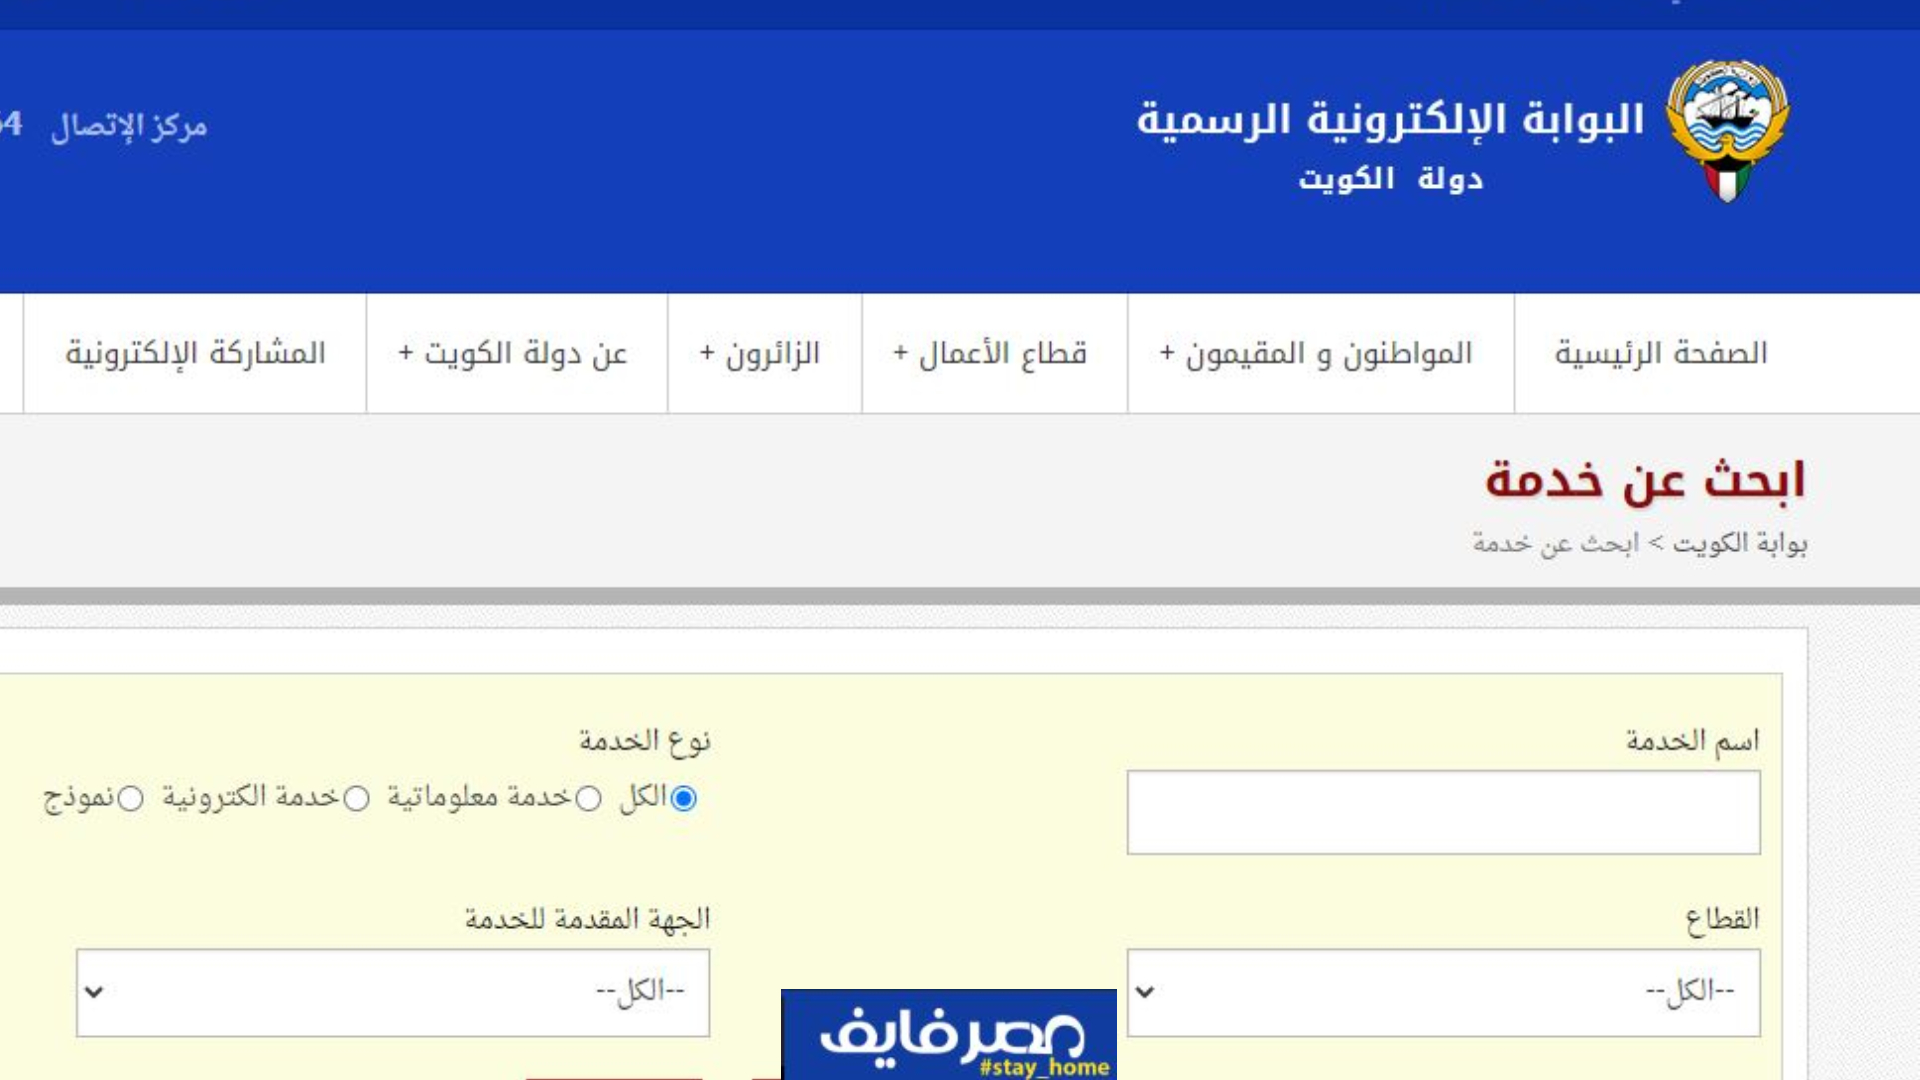 دفع رسوم البطاقة المدنية الكويت عبر البوابةالإلكترونية الرسمية 